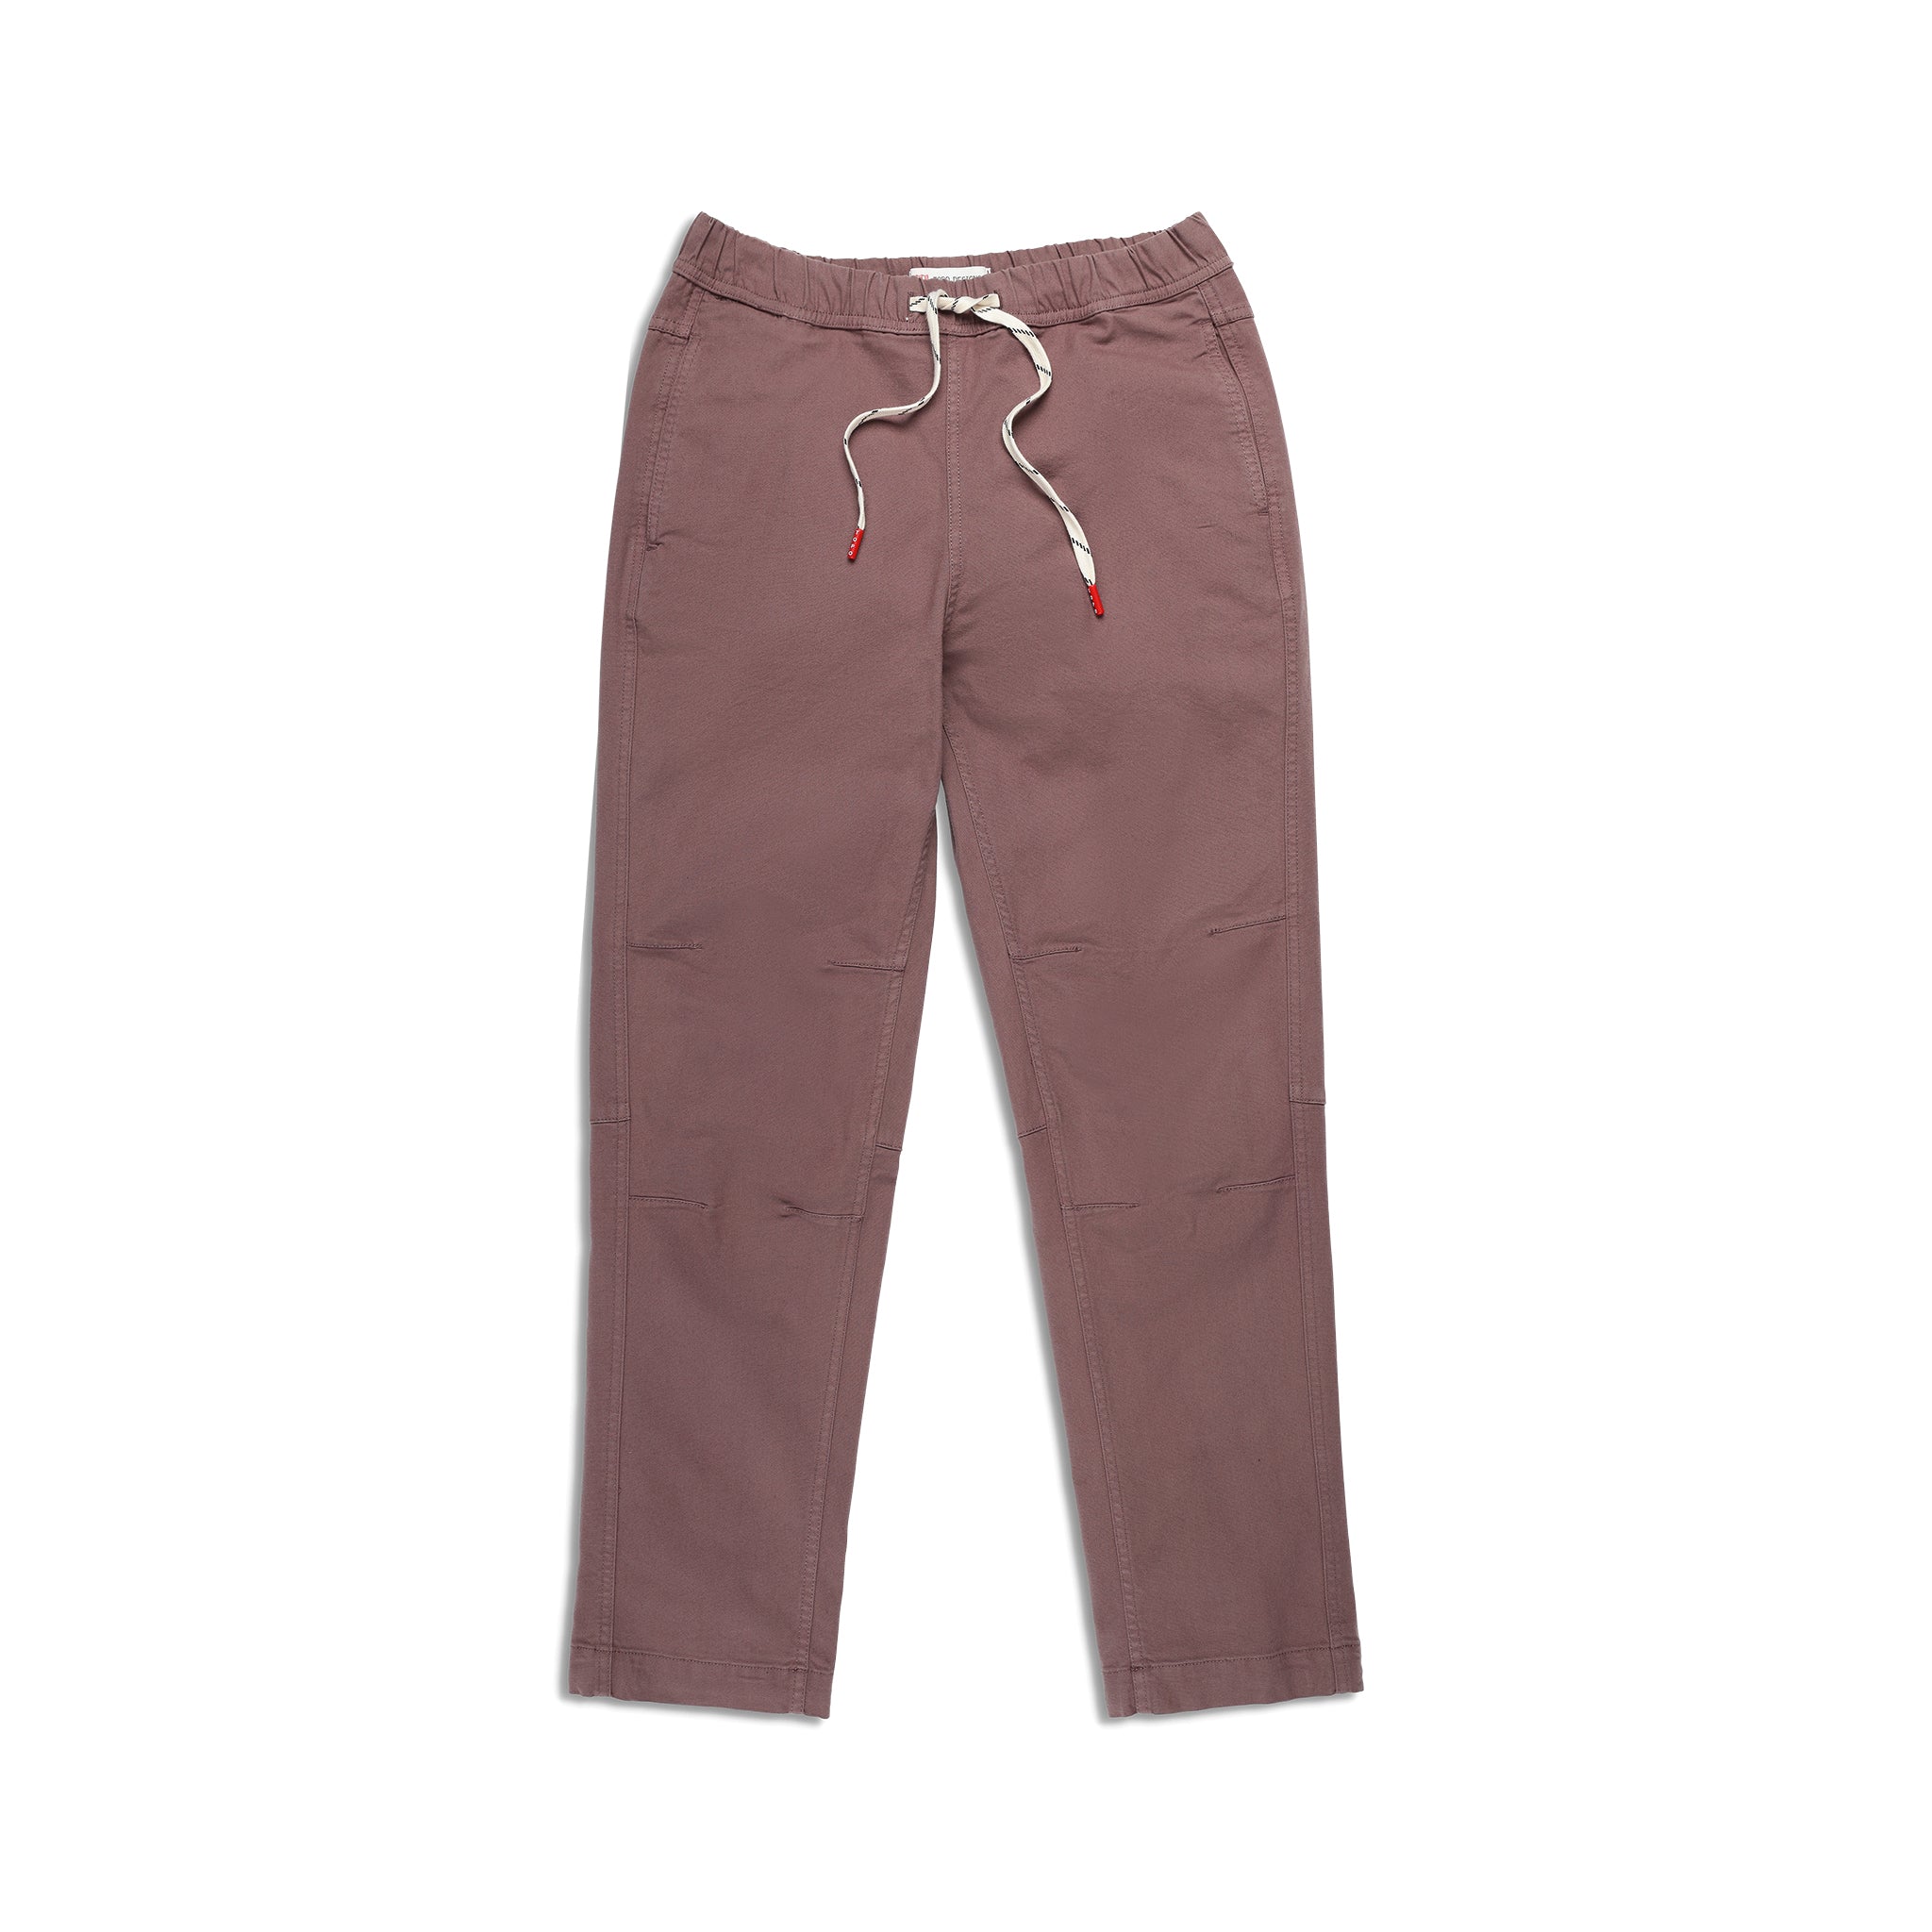 CUSTOM TEXT Soft Fleece Long Jogger Pants Customize Drawstring